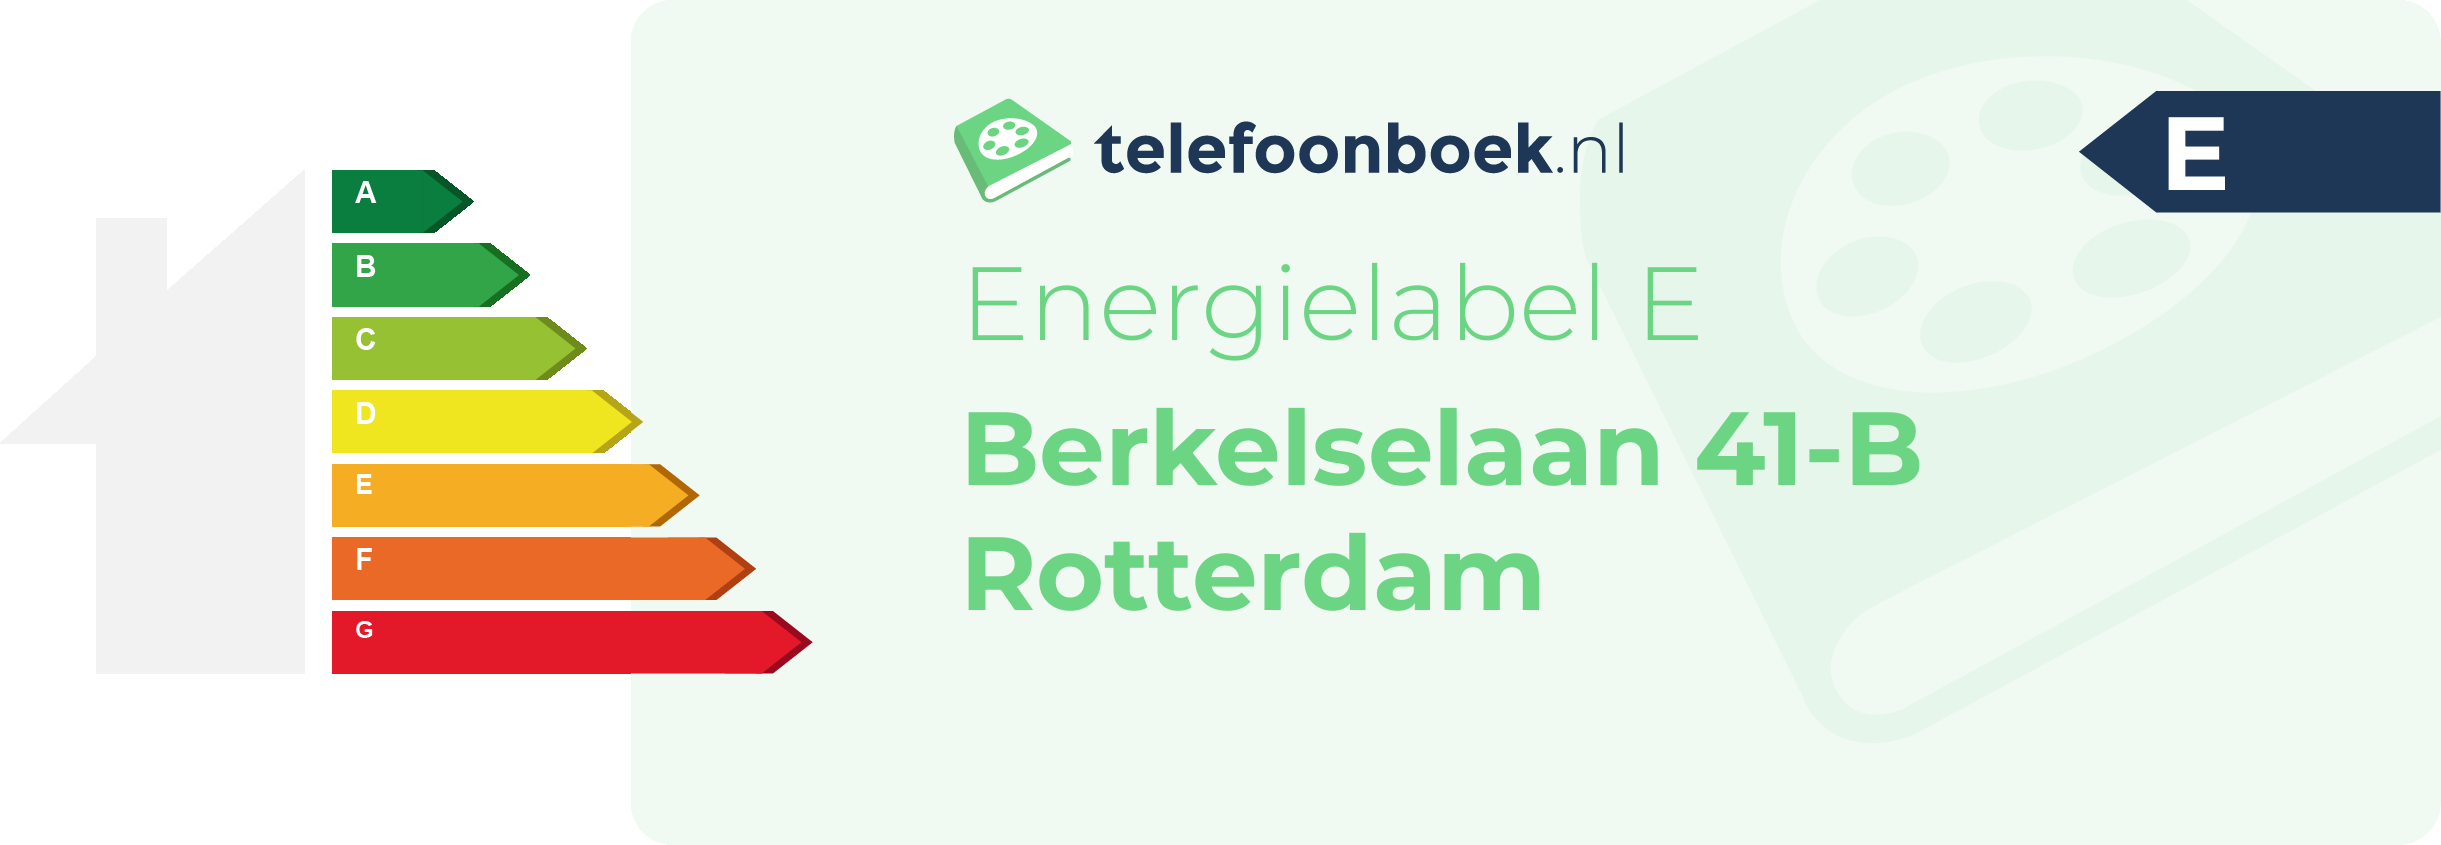 Energielabel Berkelselaan 41-B Rotterdam